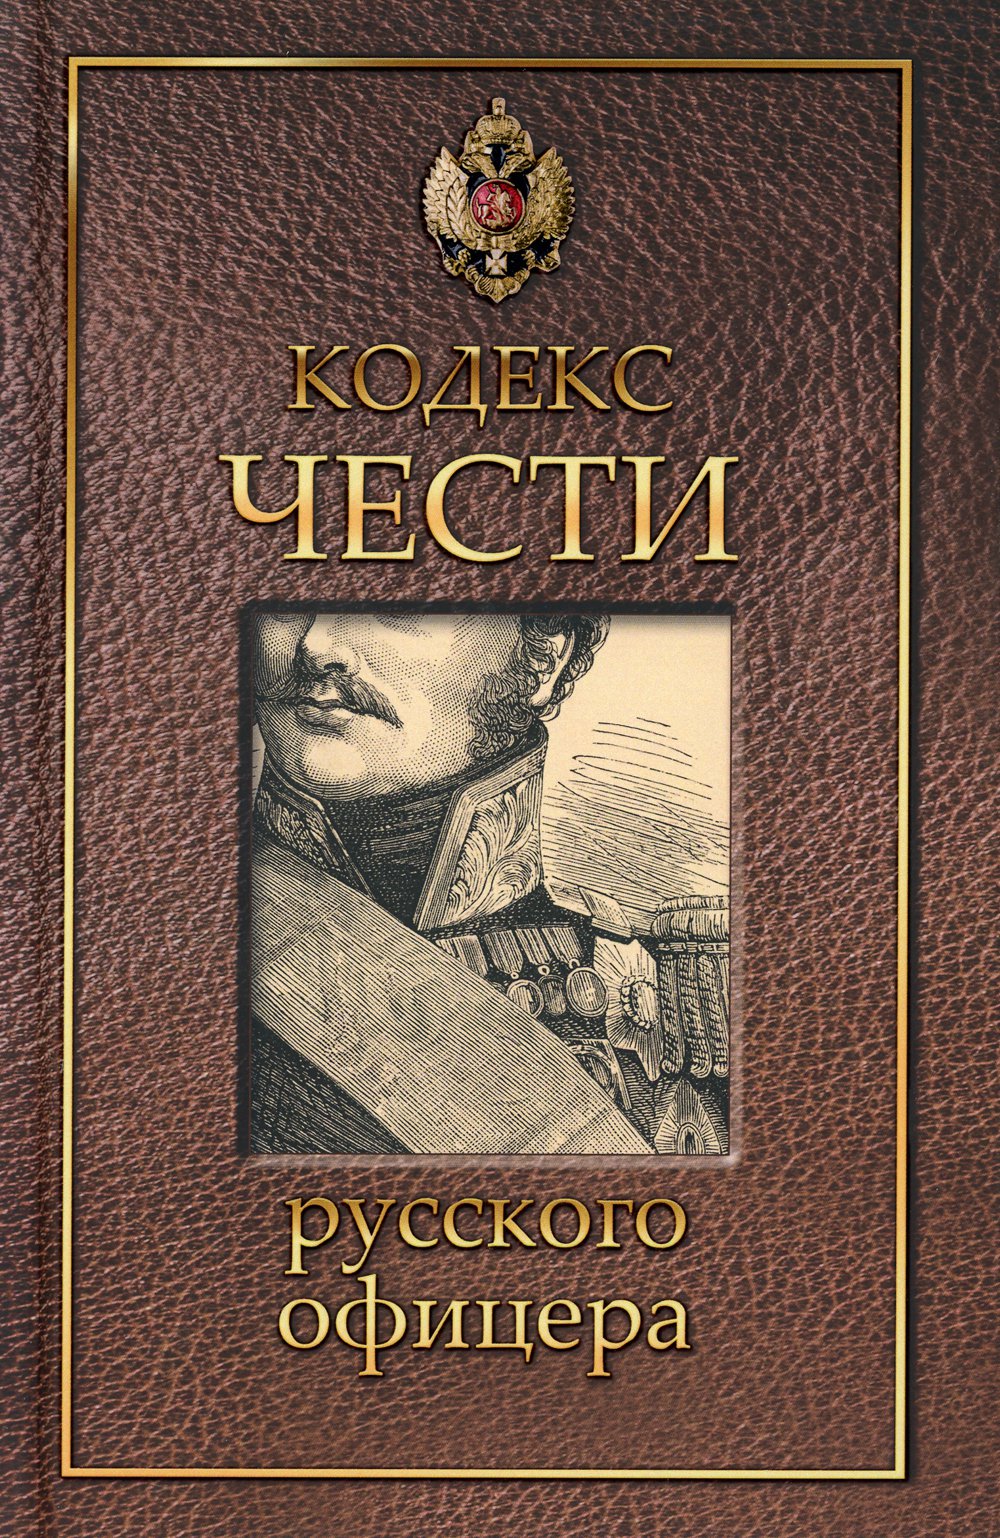 Кодекс чести русского офицера.